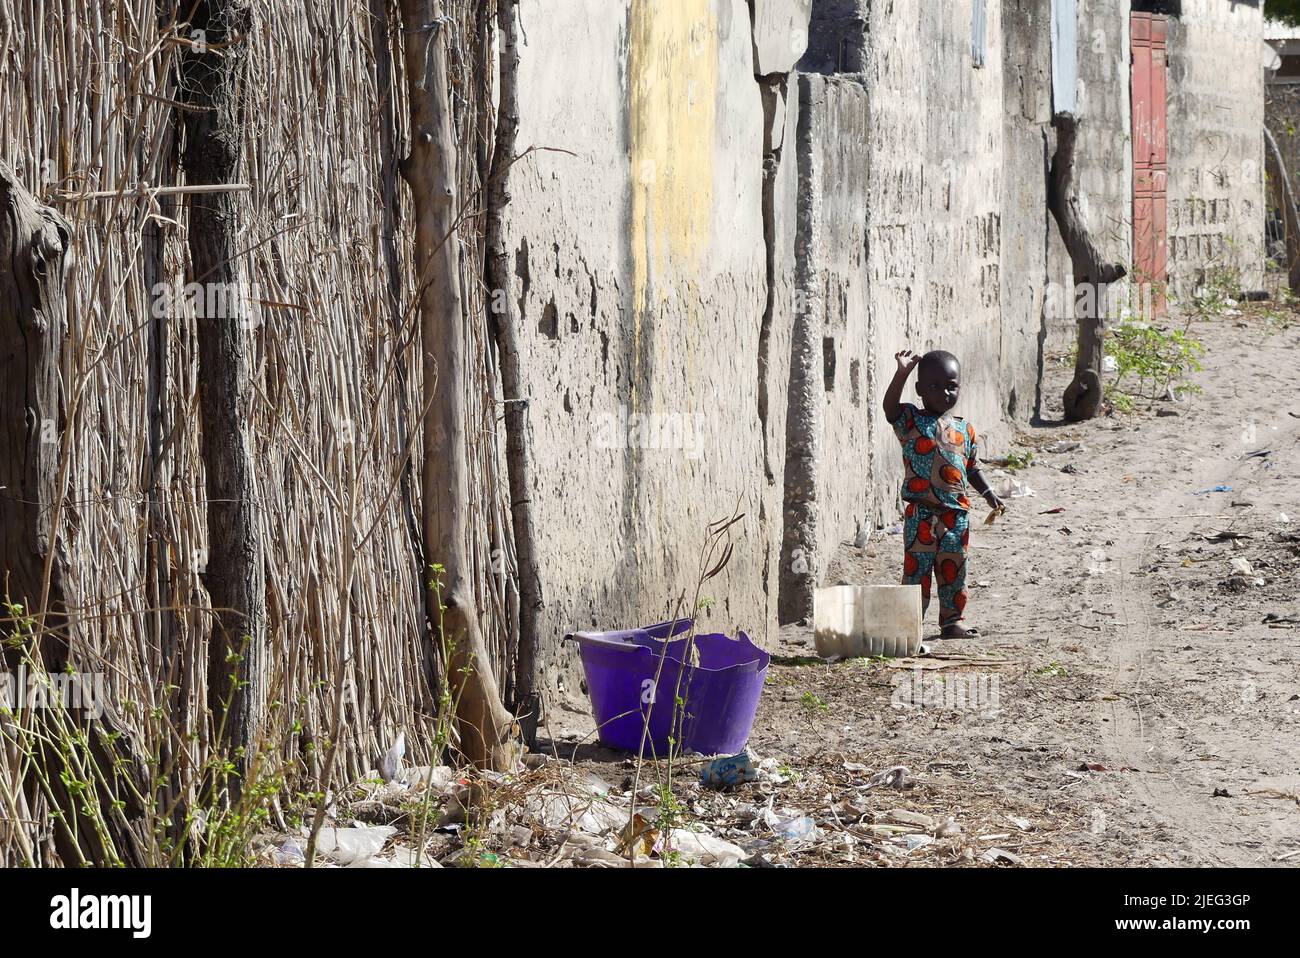 Jeune enfant africain noir, de couleur noire, dans un quartier pauvre de Touba, Sénégal, Afrique de l'Ouest Banque D'Images